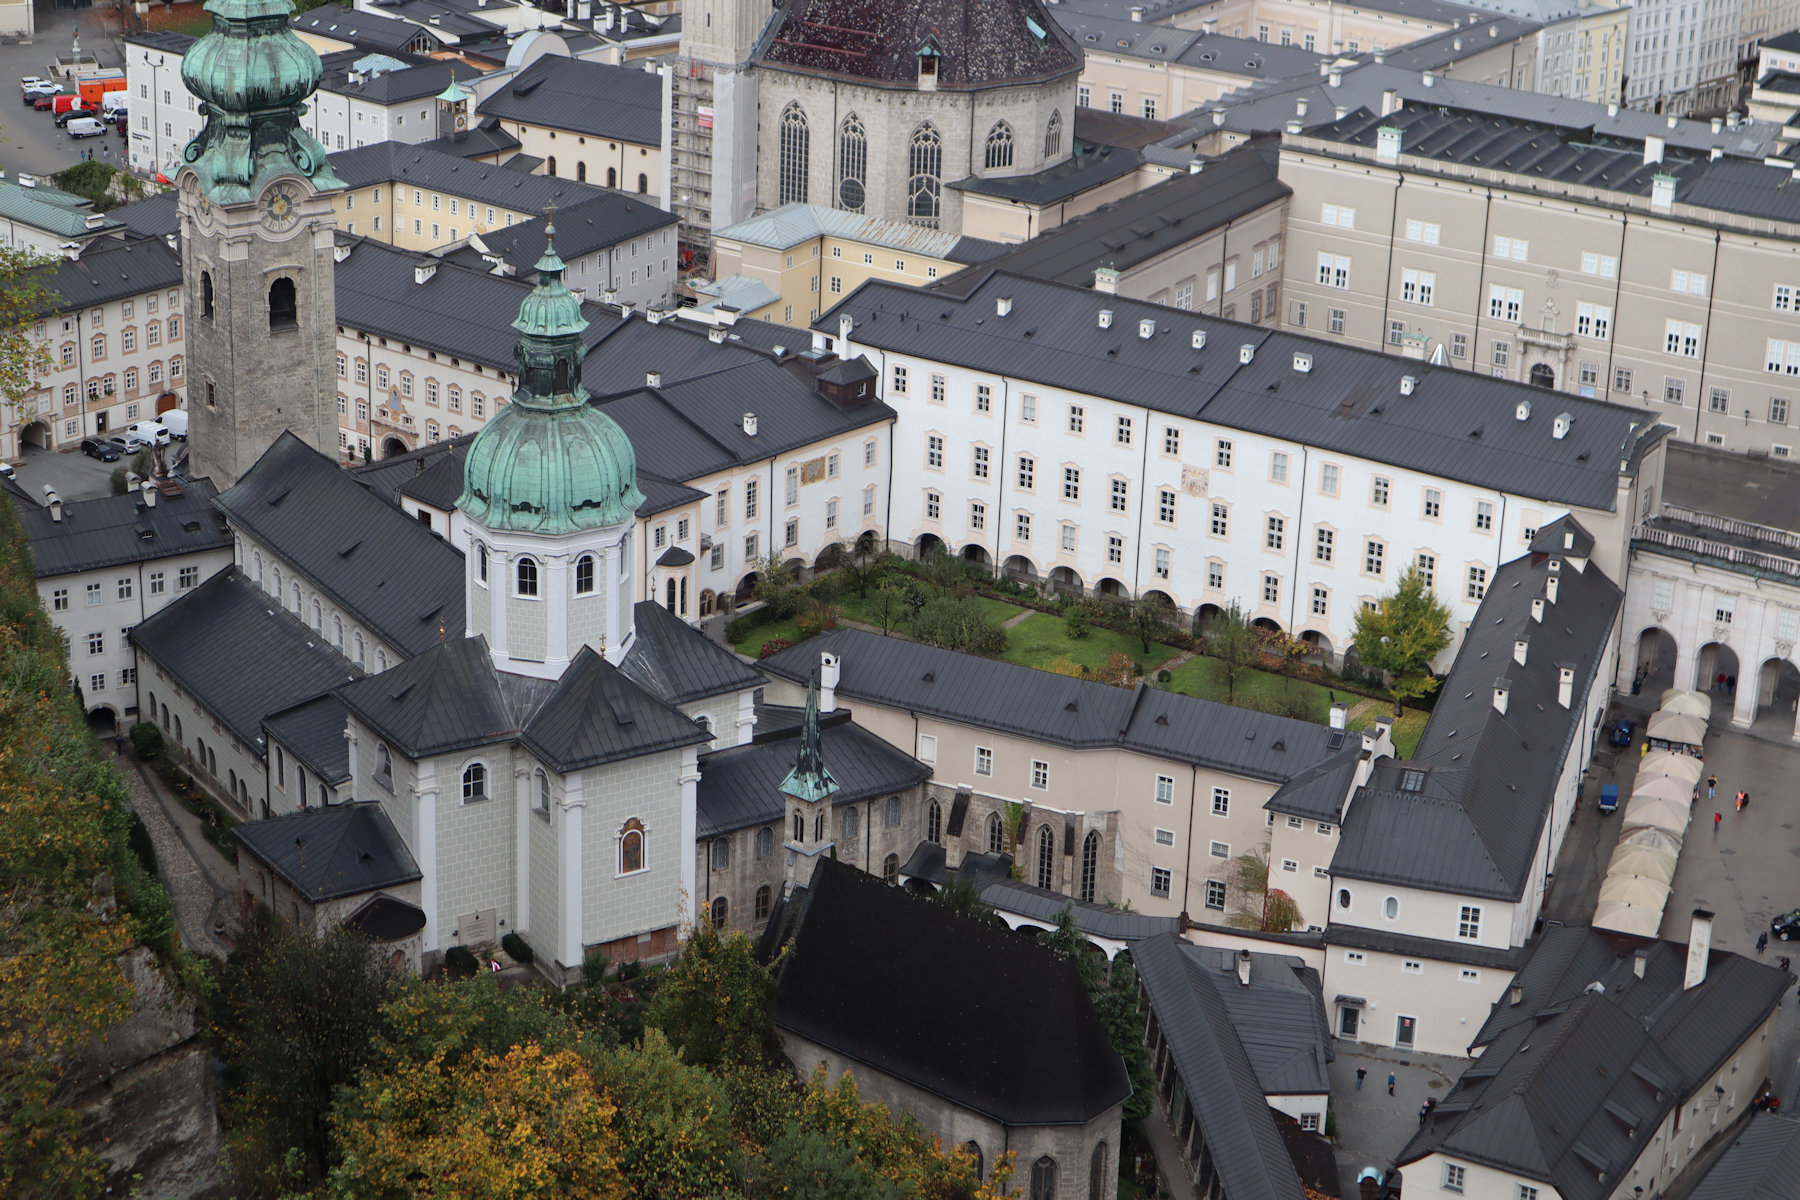 Kirche und Kloster St. Peter in Salzburg, von der Festung Hohensalzburg aus gesehen